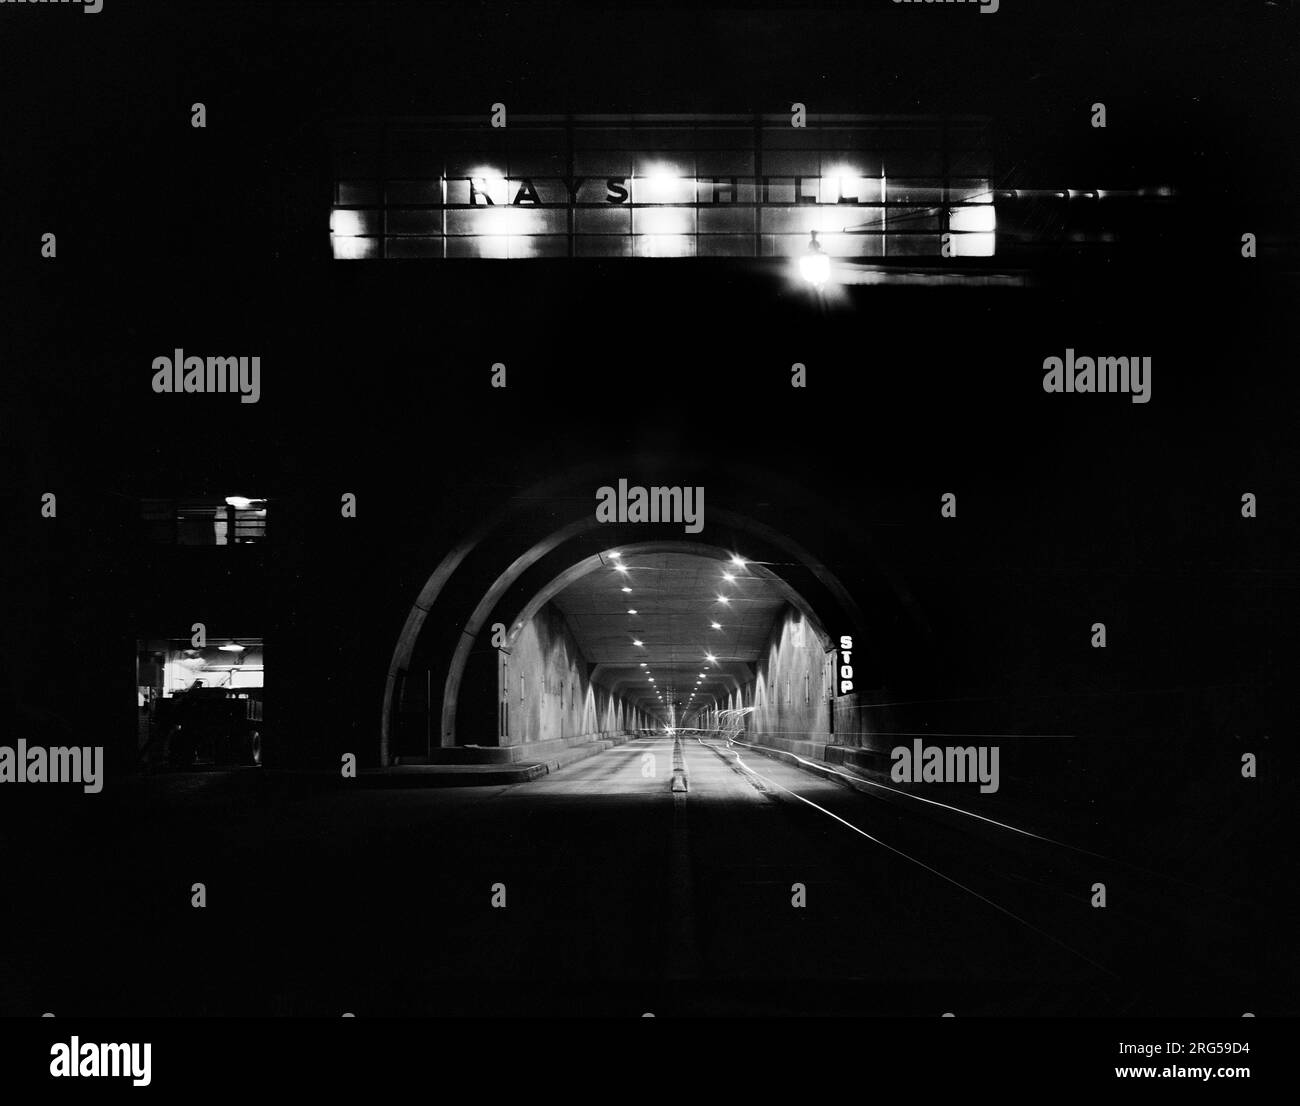 Túnel en la noche, Pennsylvania Turnpike, Pennsylvania, EE.UU., Arthur Rothstein, EE.UU Oficina de Información de Guerra, julio de 1942 Foto de stock